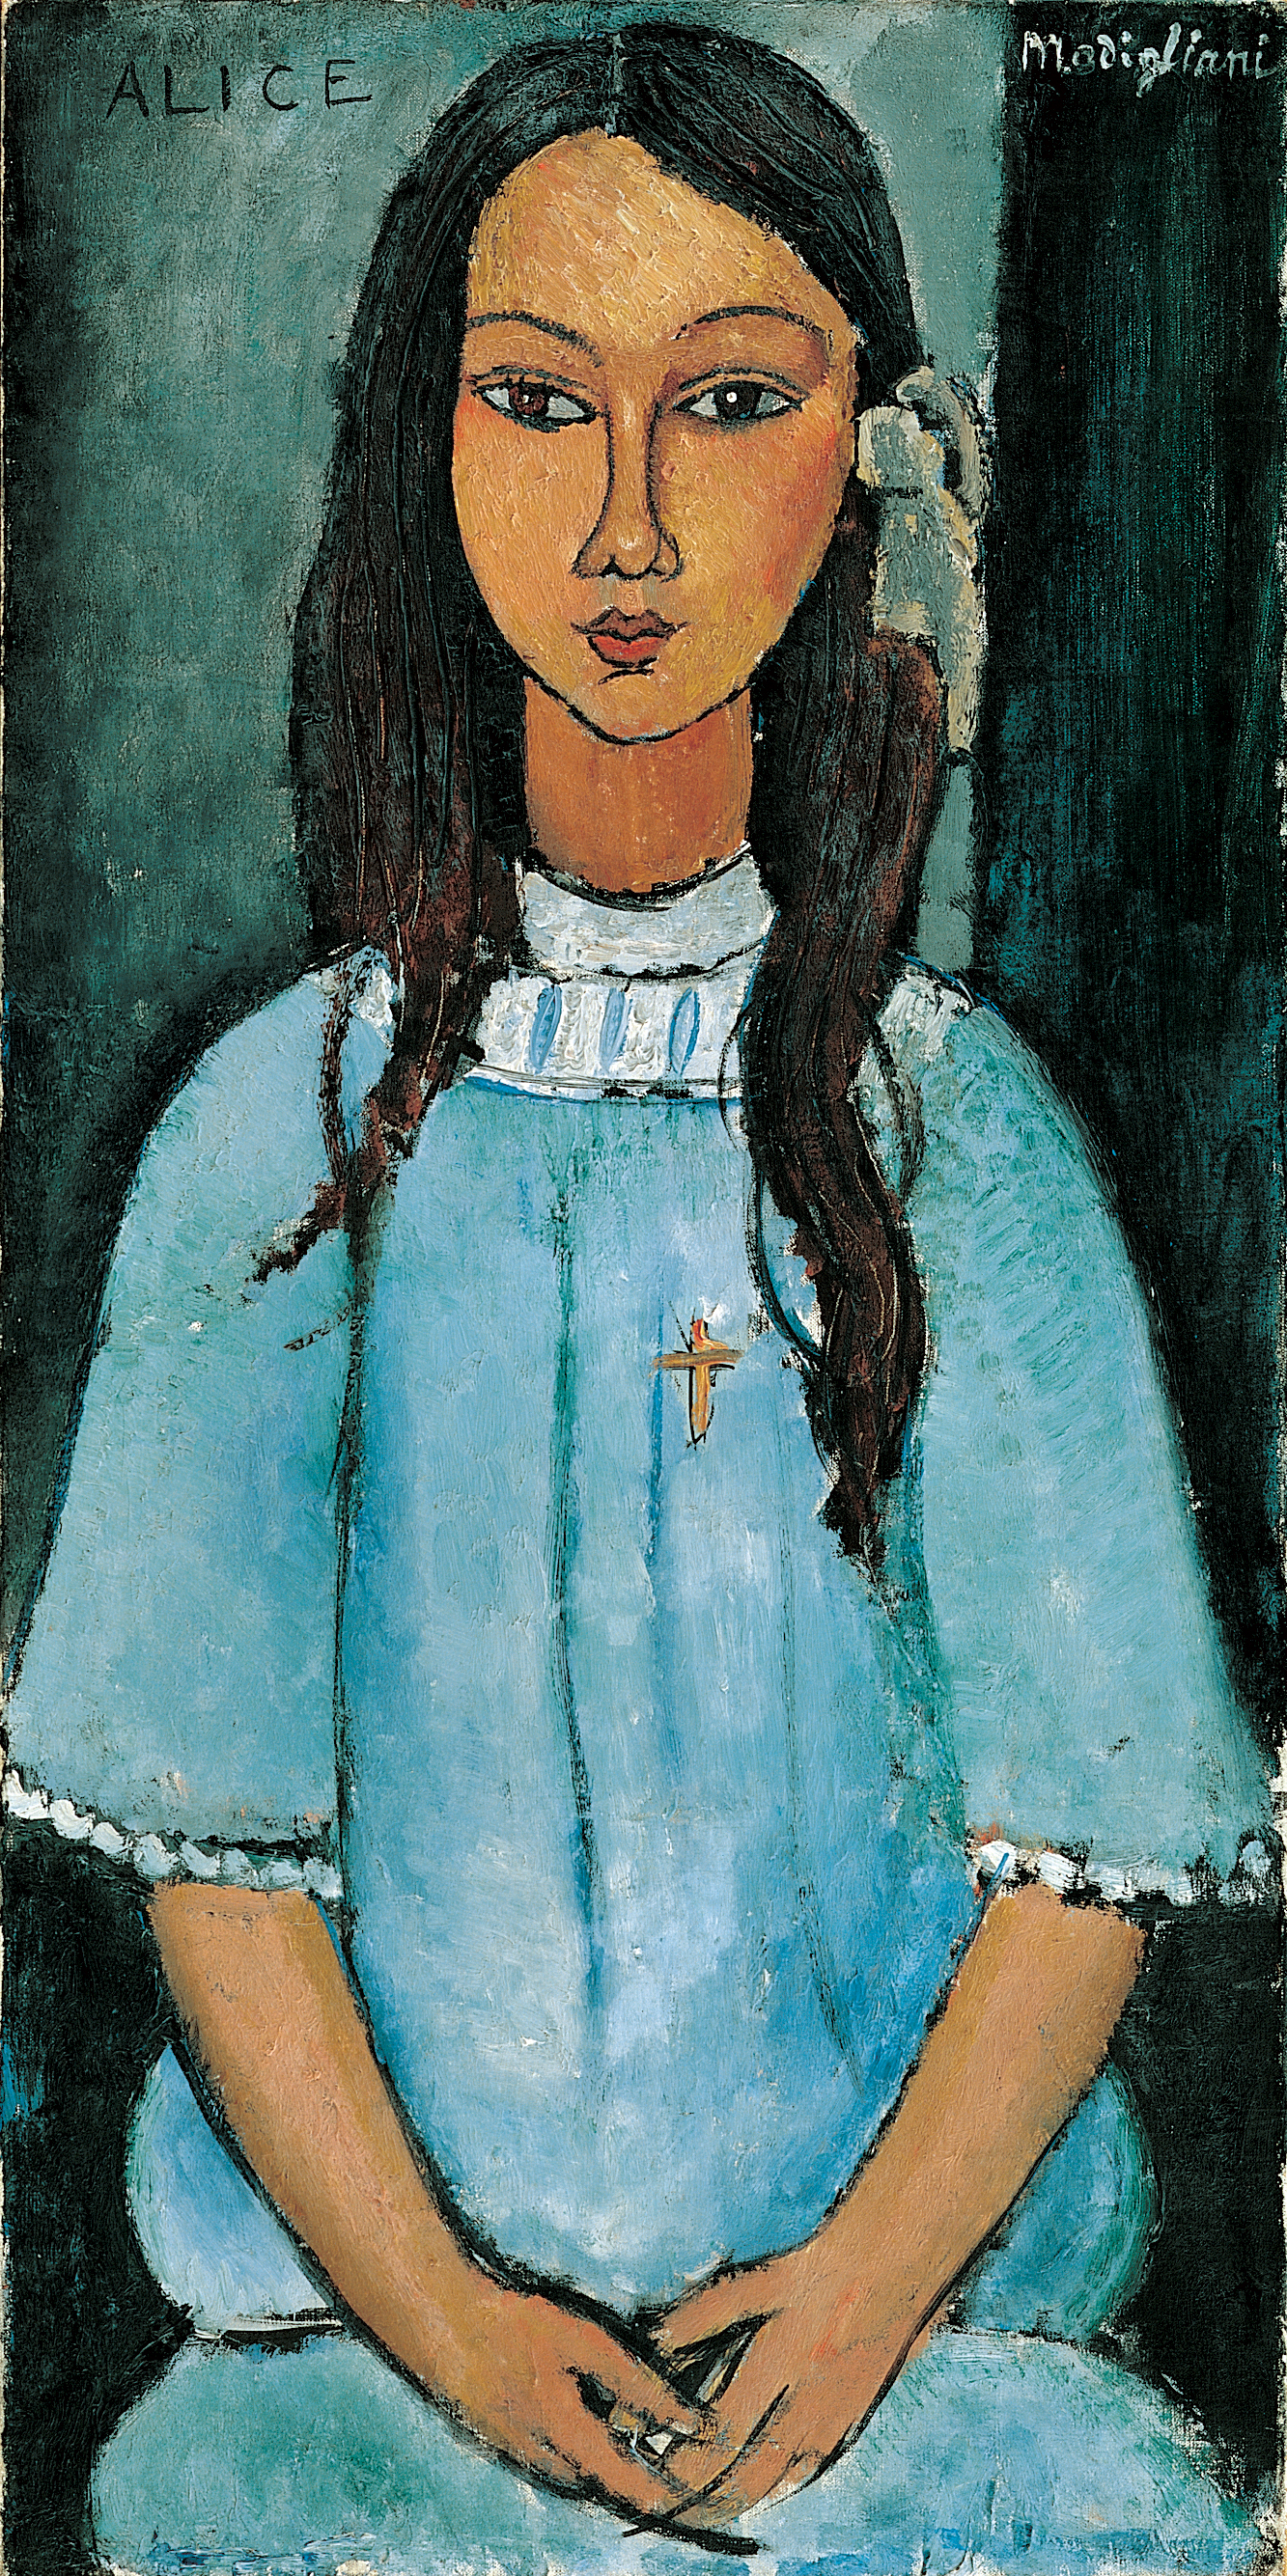 Alice by Amedeo Modigliani - 1918 - 39 x 78,5 cm 